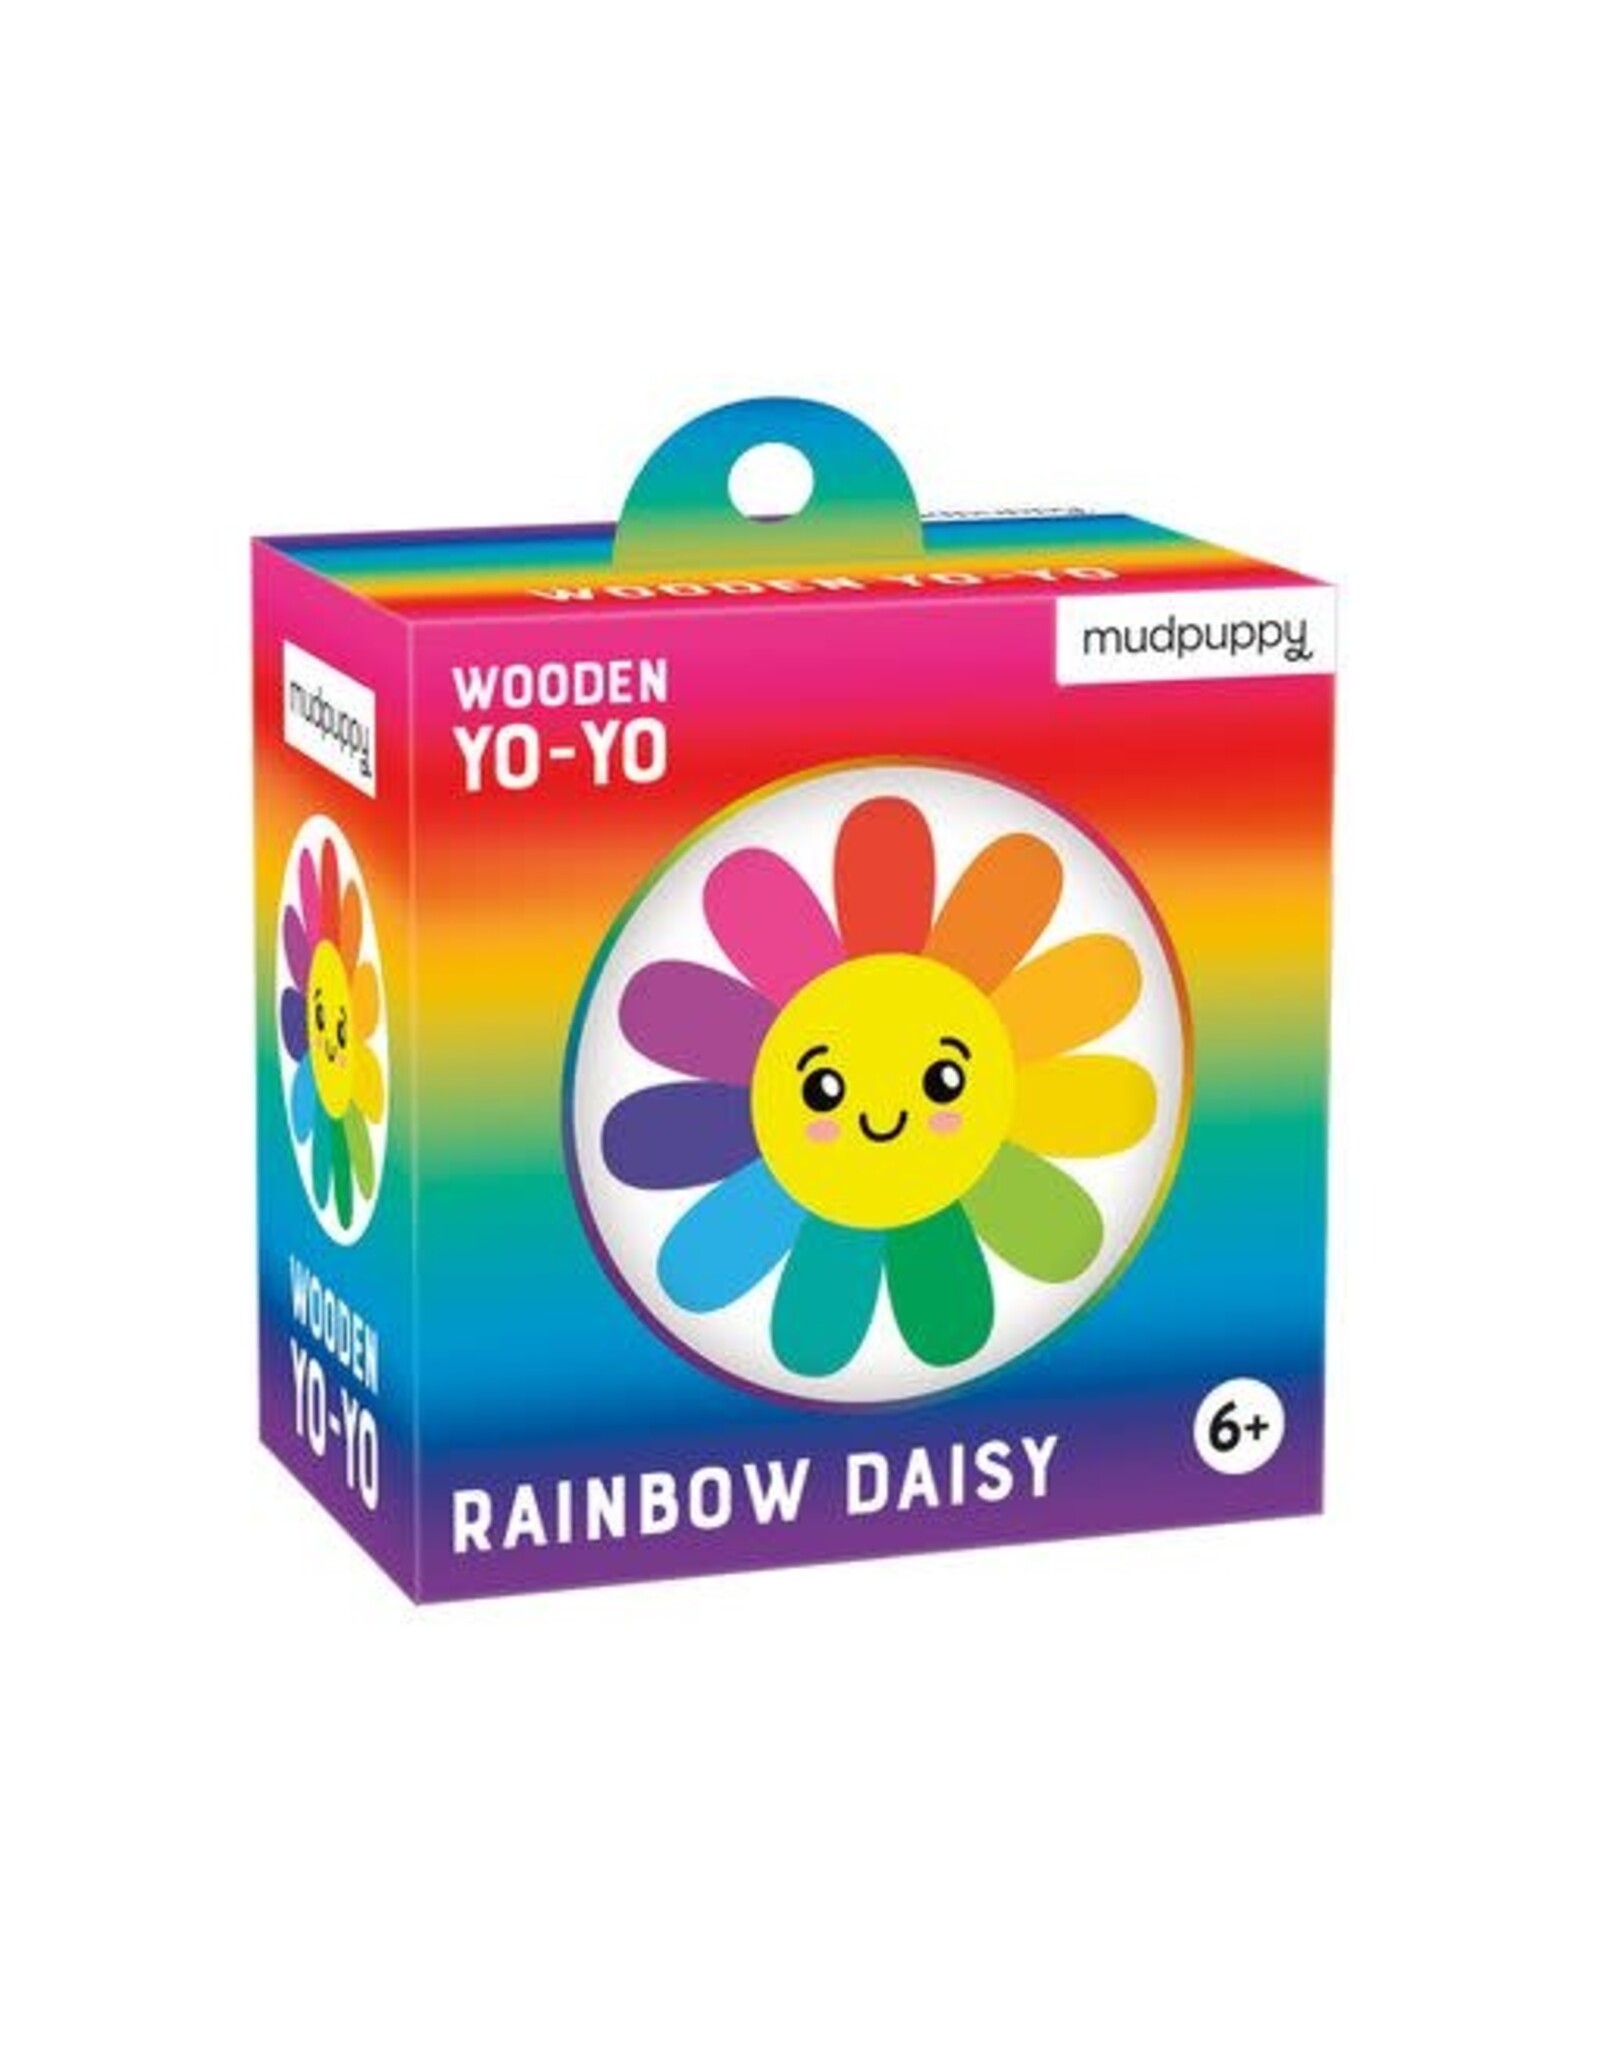 Mudpuppy Wooden Yo-Yo Rainbow Daisy